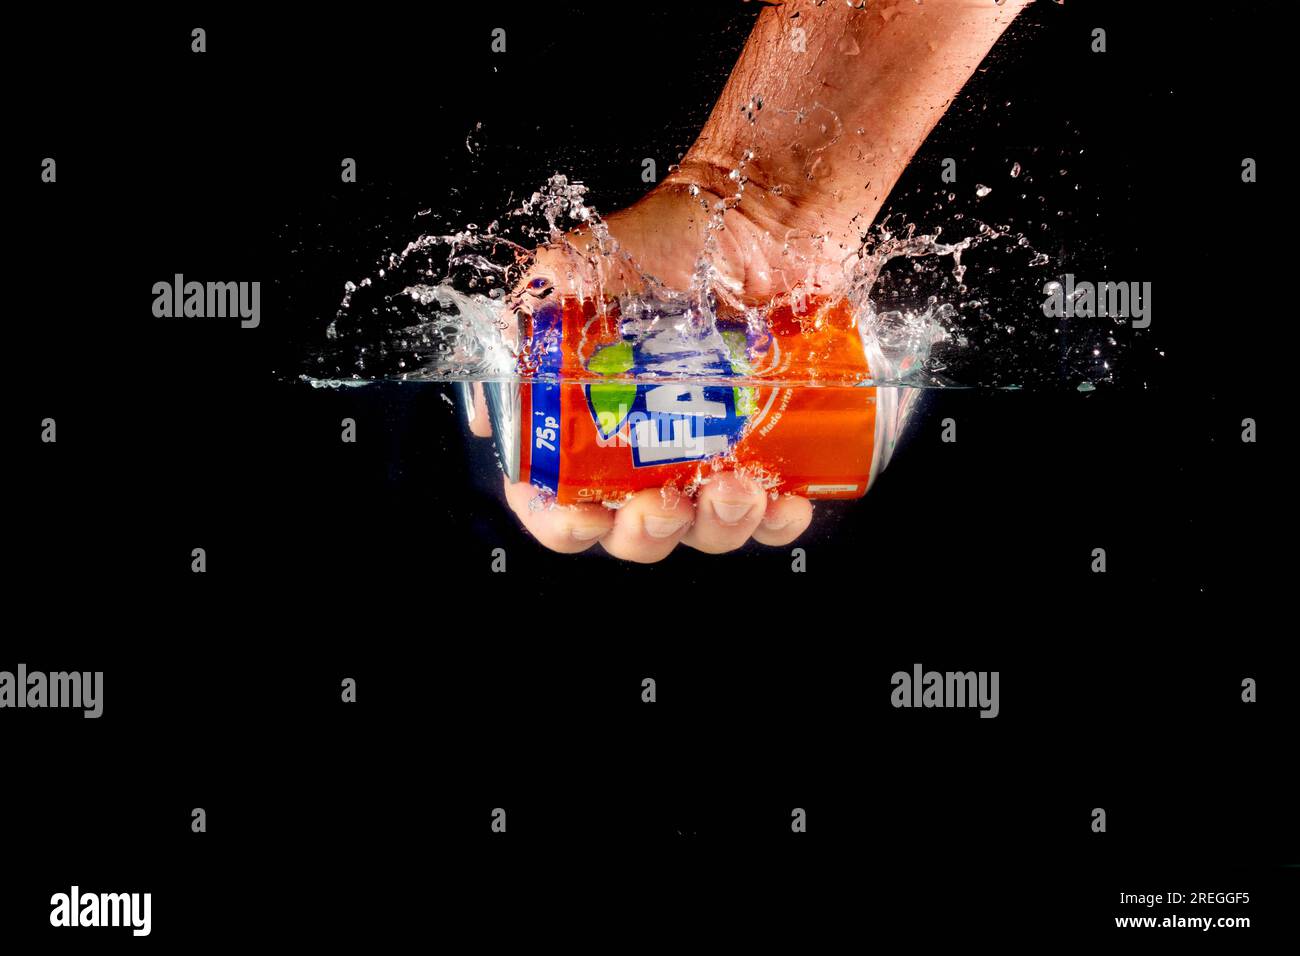 Londra, Regno Unito, 24 luglio 2023: Una lattina di Fanta Orange tenuta da una mano che spruzza in acqua su uno sfondo nero Foto Stock